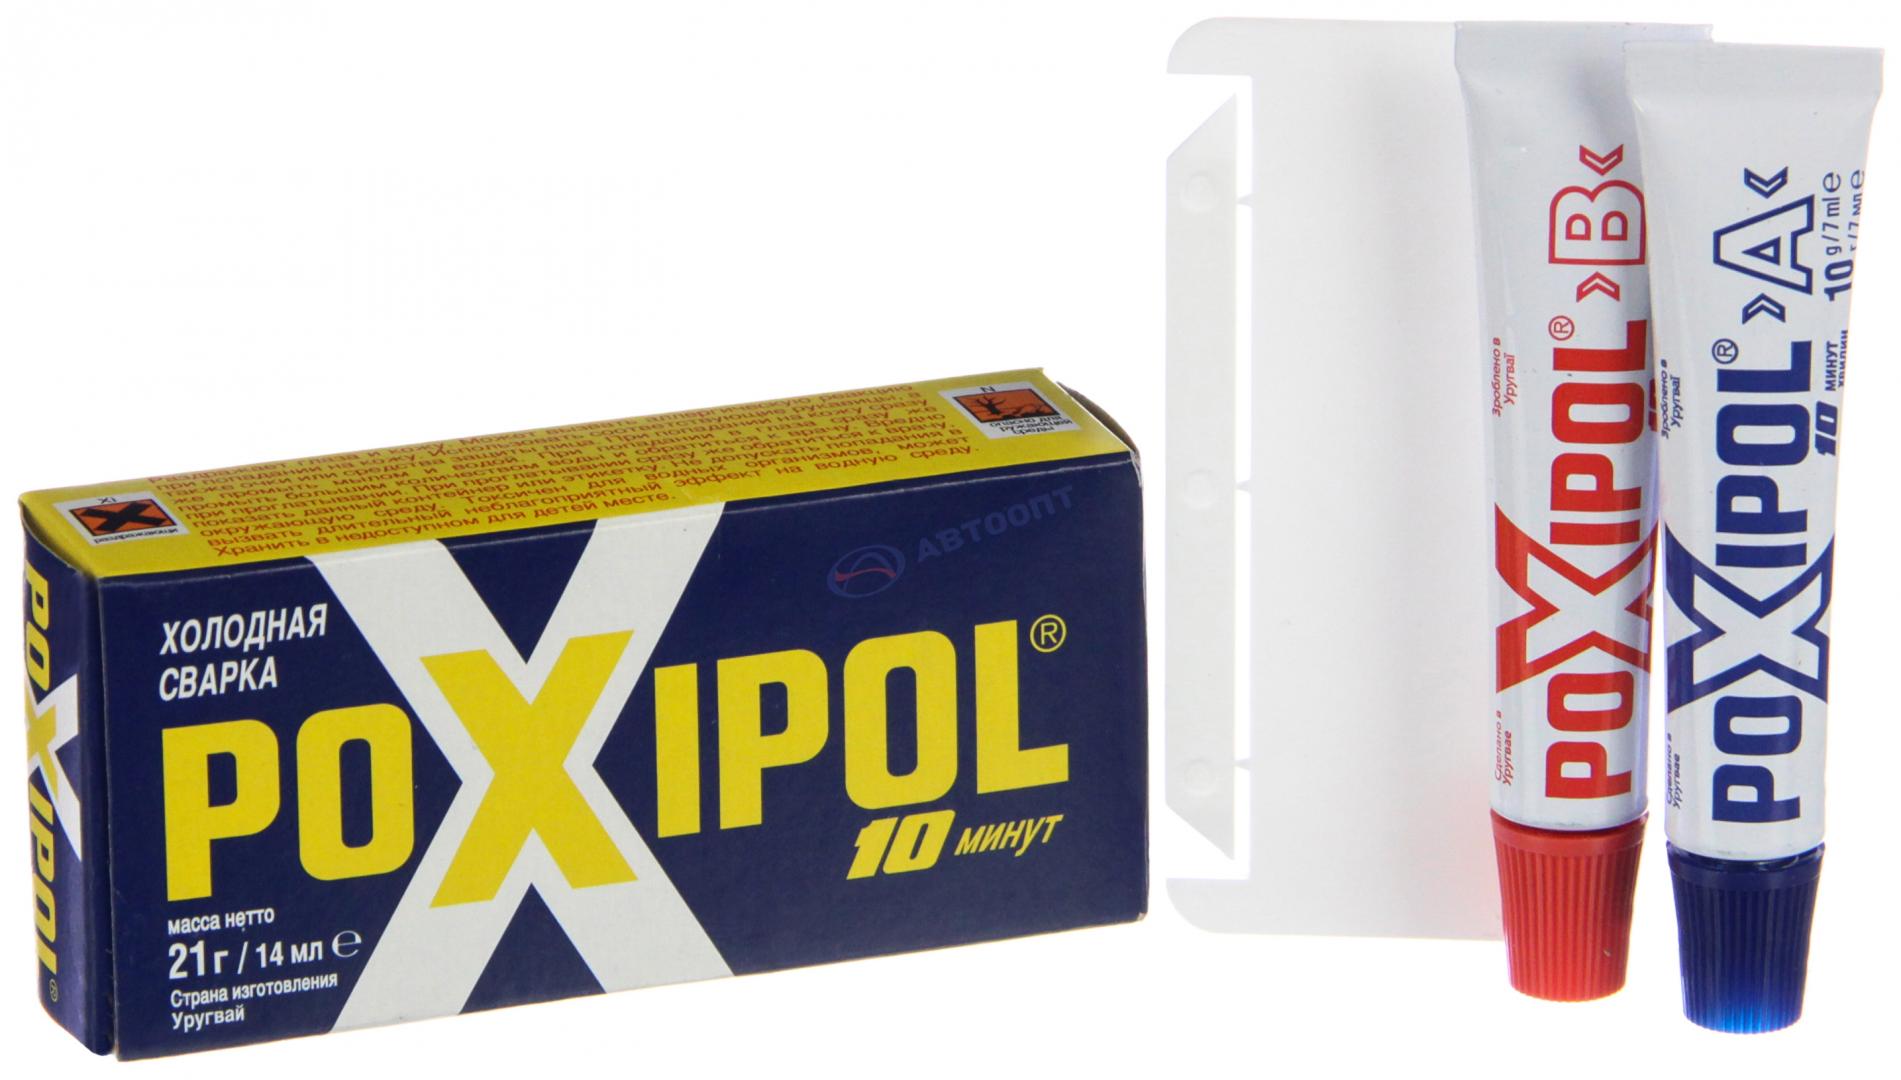 Клей POXIPOL эпоксидный металл, двухкомпонент, высокопрочный 14г (сварка холодная) (ST01971) POXIPOL (Уругвай)